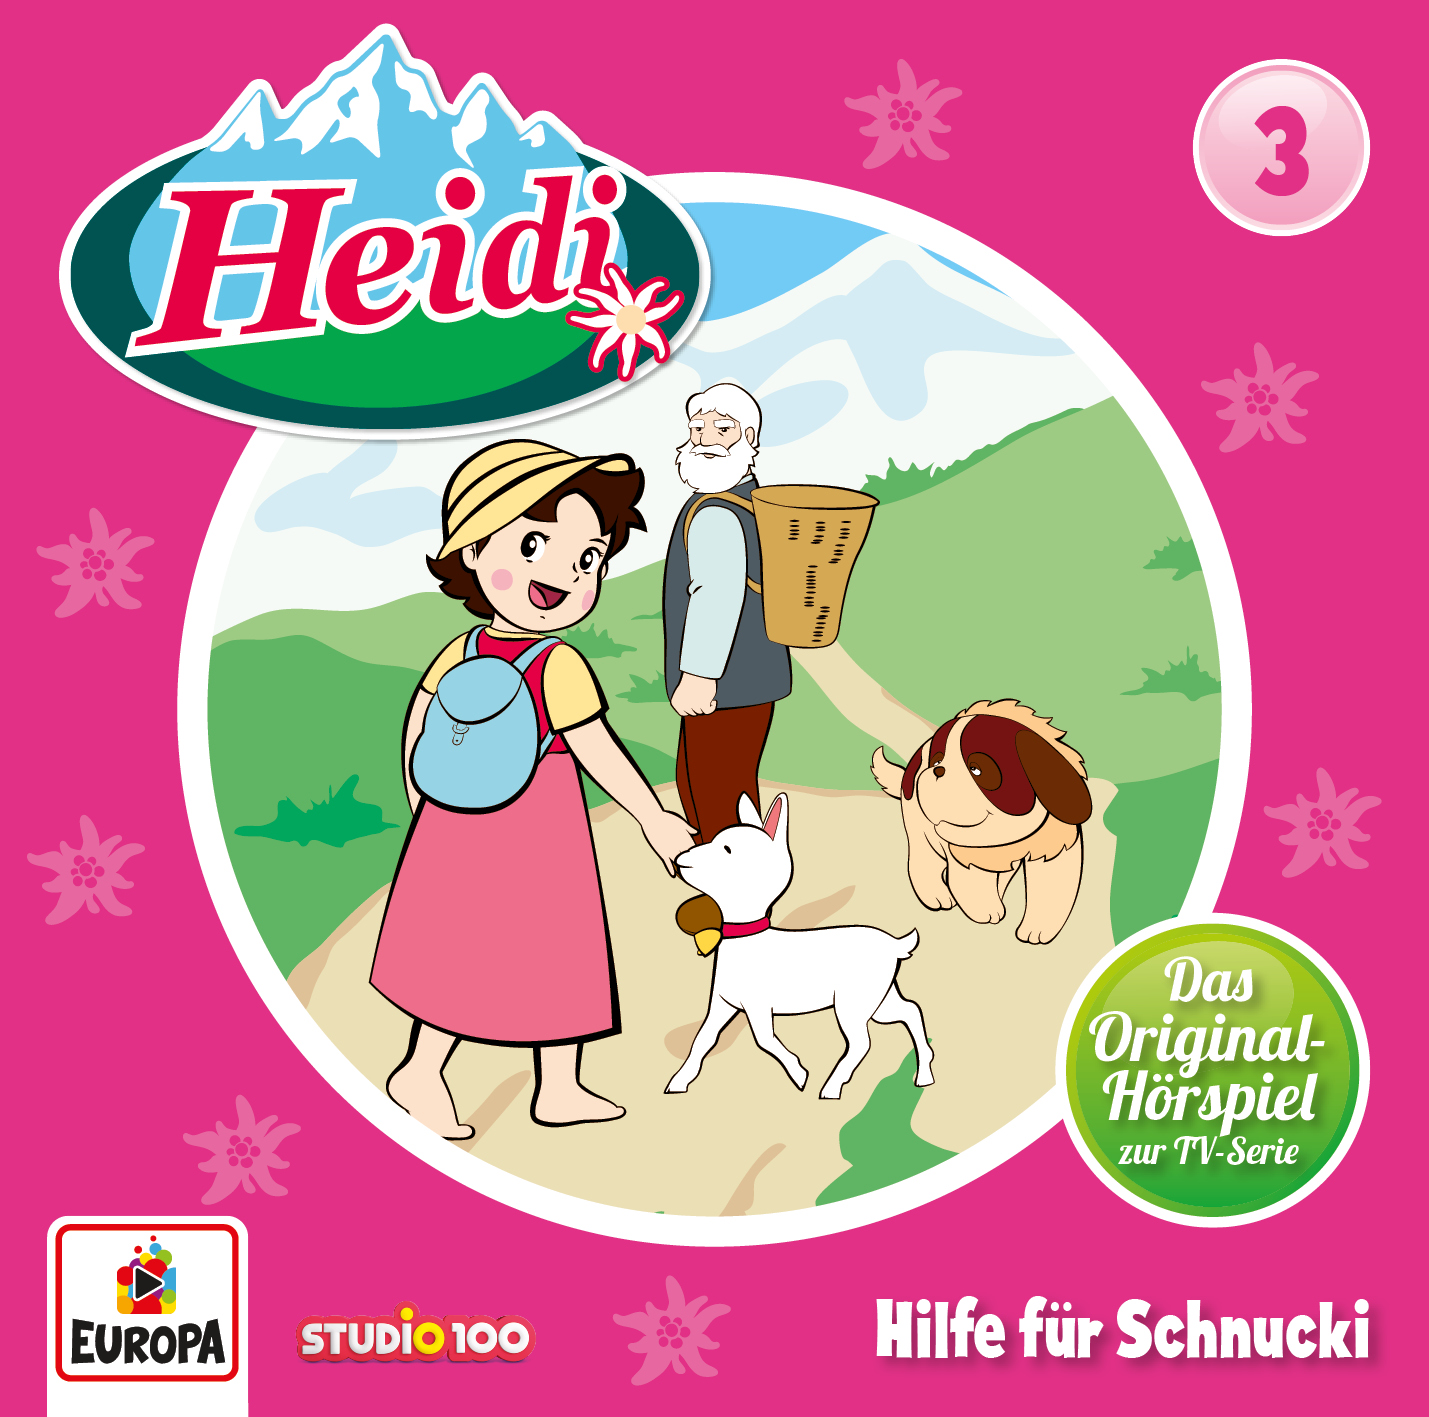 Heidi - Hilfe für Schnucki